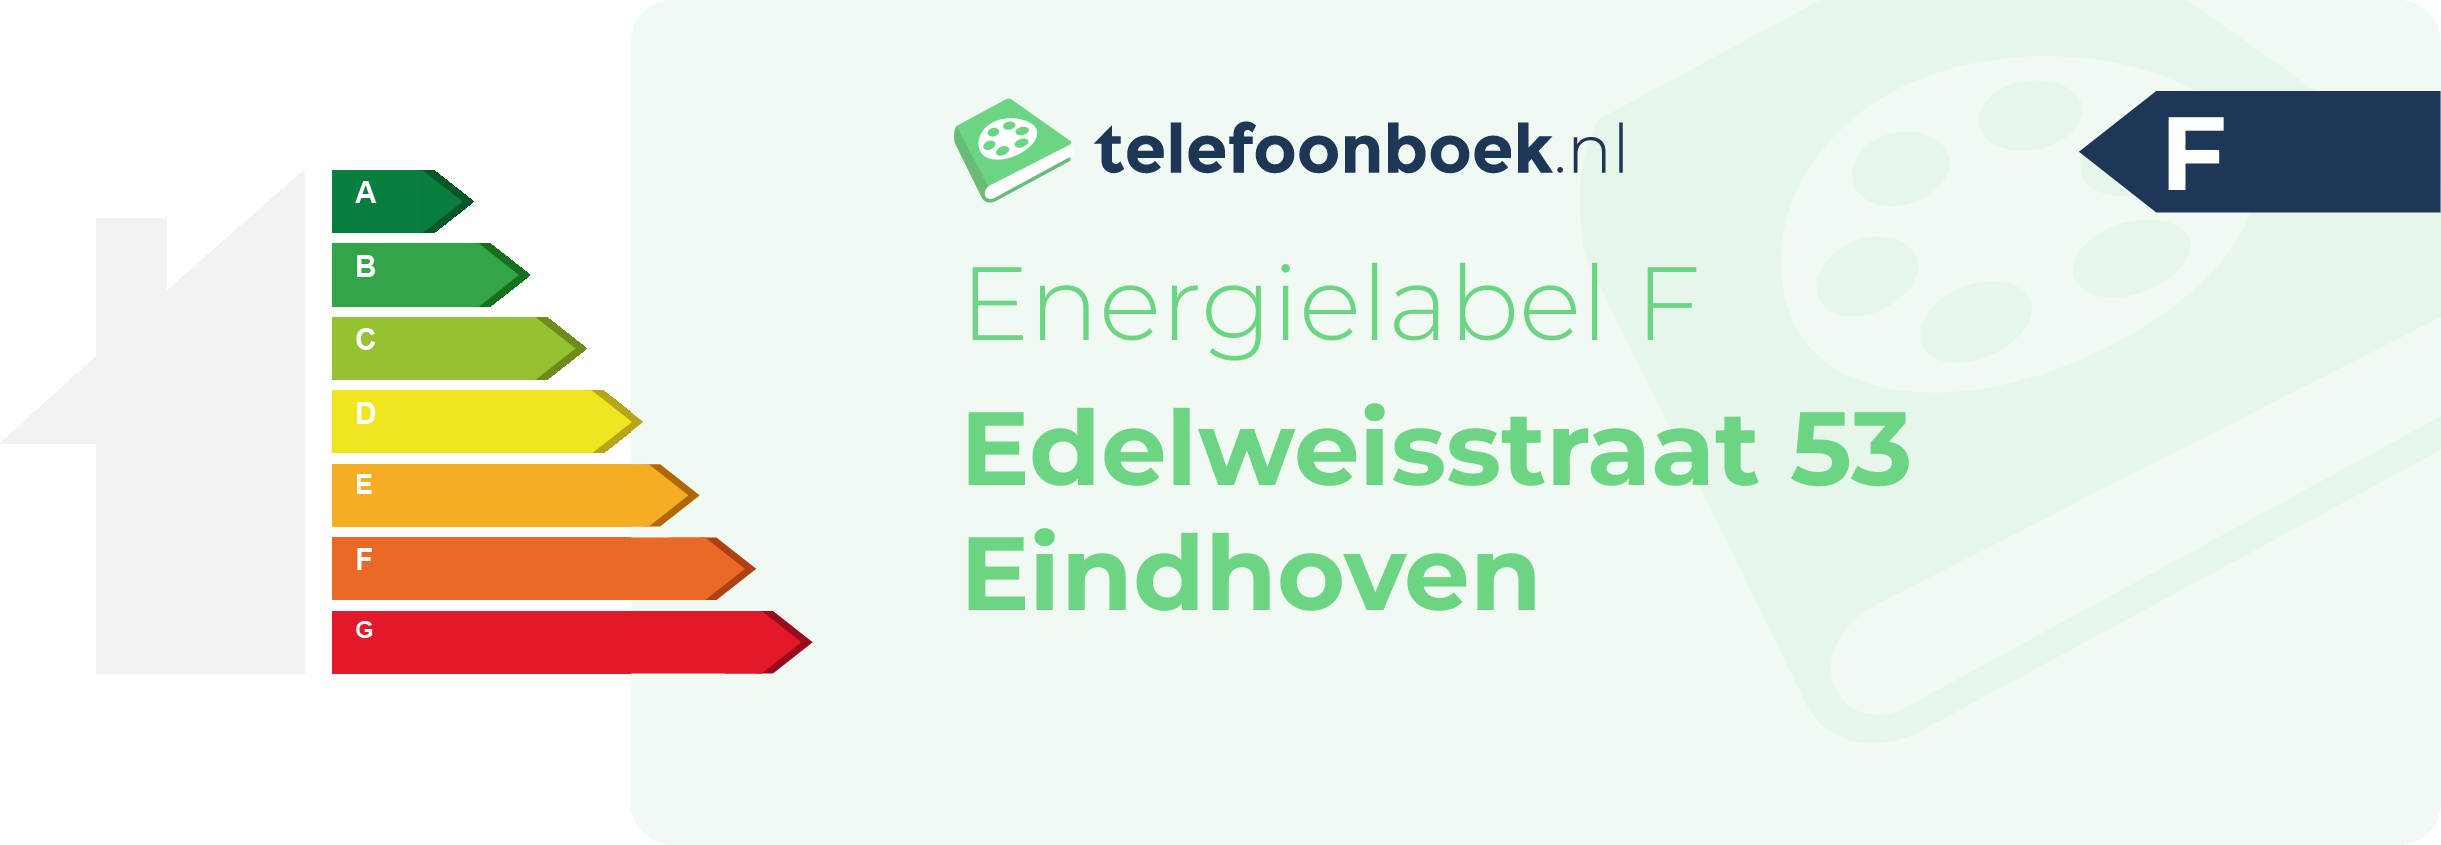 Energielabel Edelweisstraat 53 Eindhoven